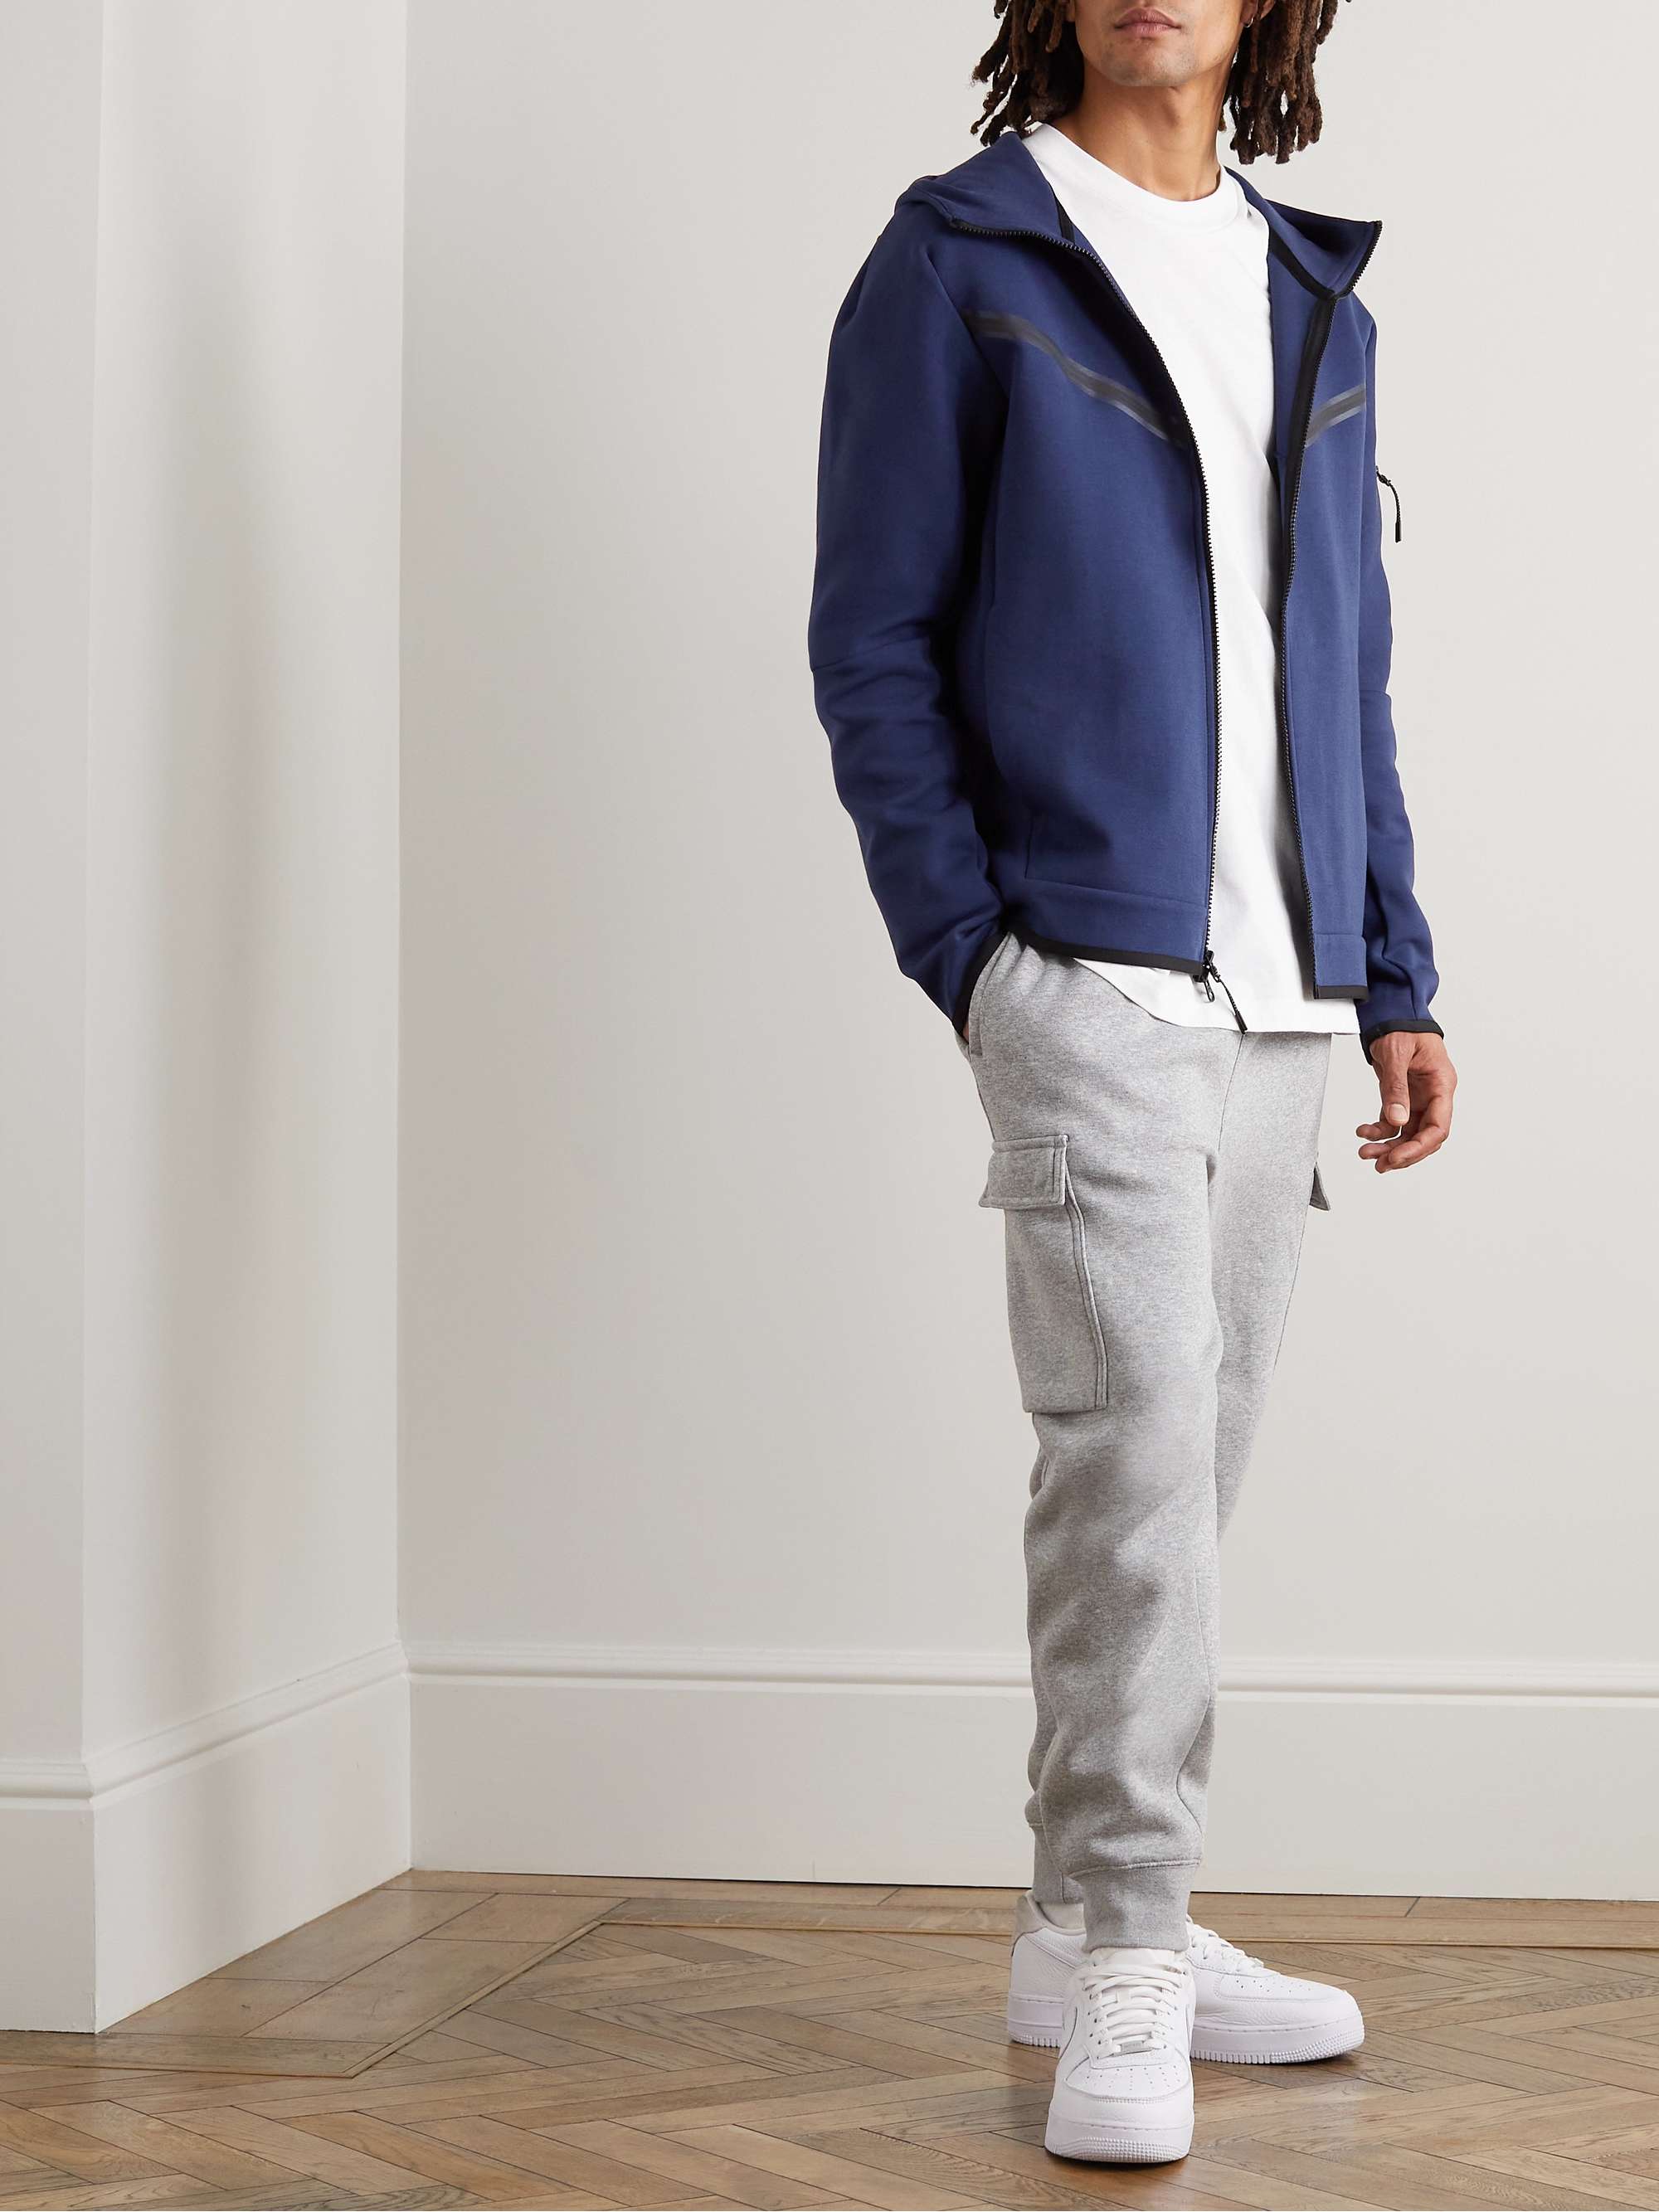 NIKE Sportswear Cotton-Blend Tech-Fleece Zip-Up Hoodie | MR PORTER